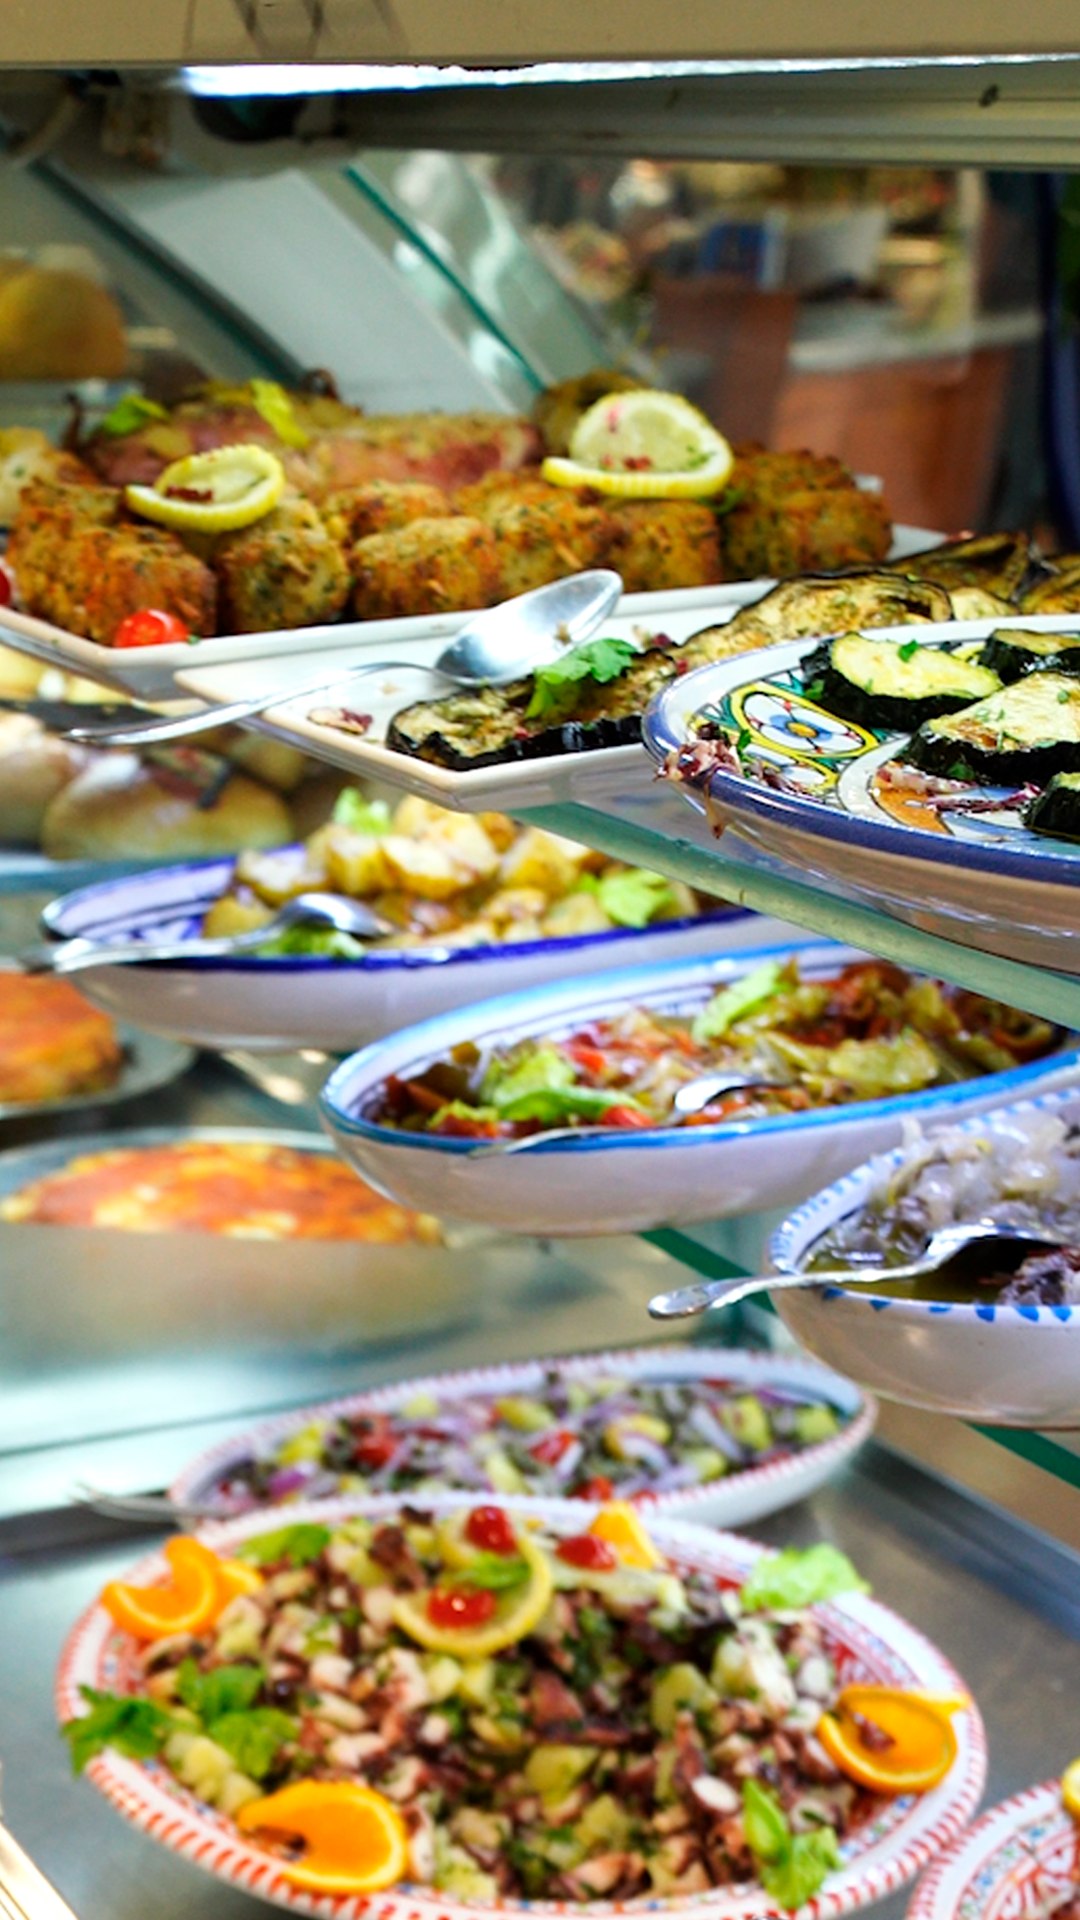 Concediti una pausa #pranzo degna dei sapori mediterranei! 🍝

Da Saro